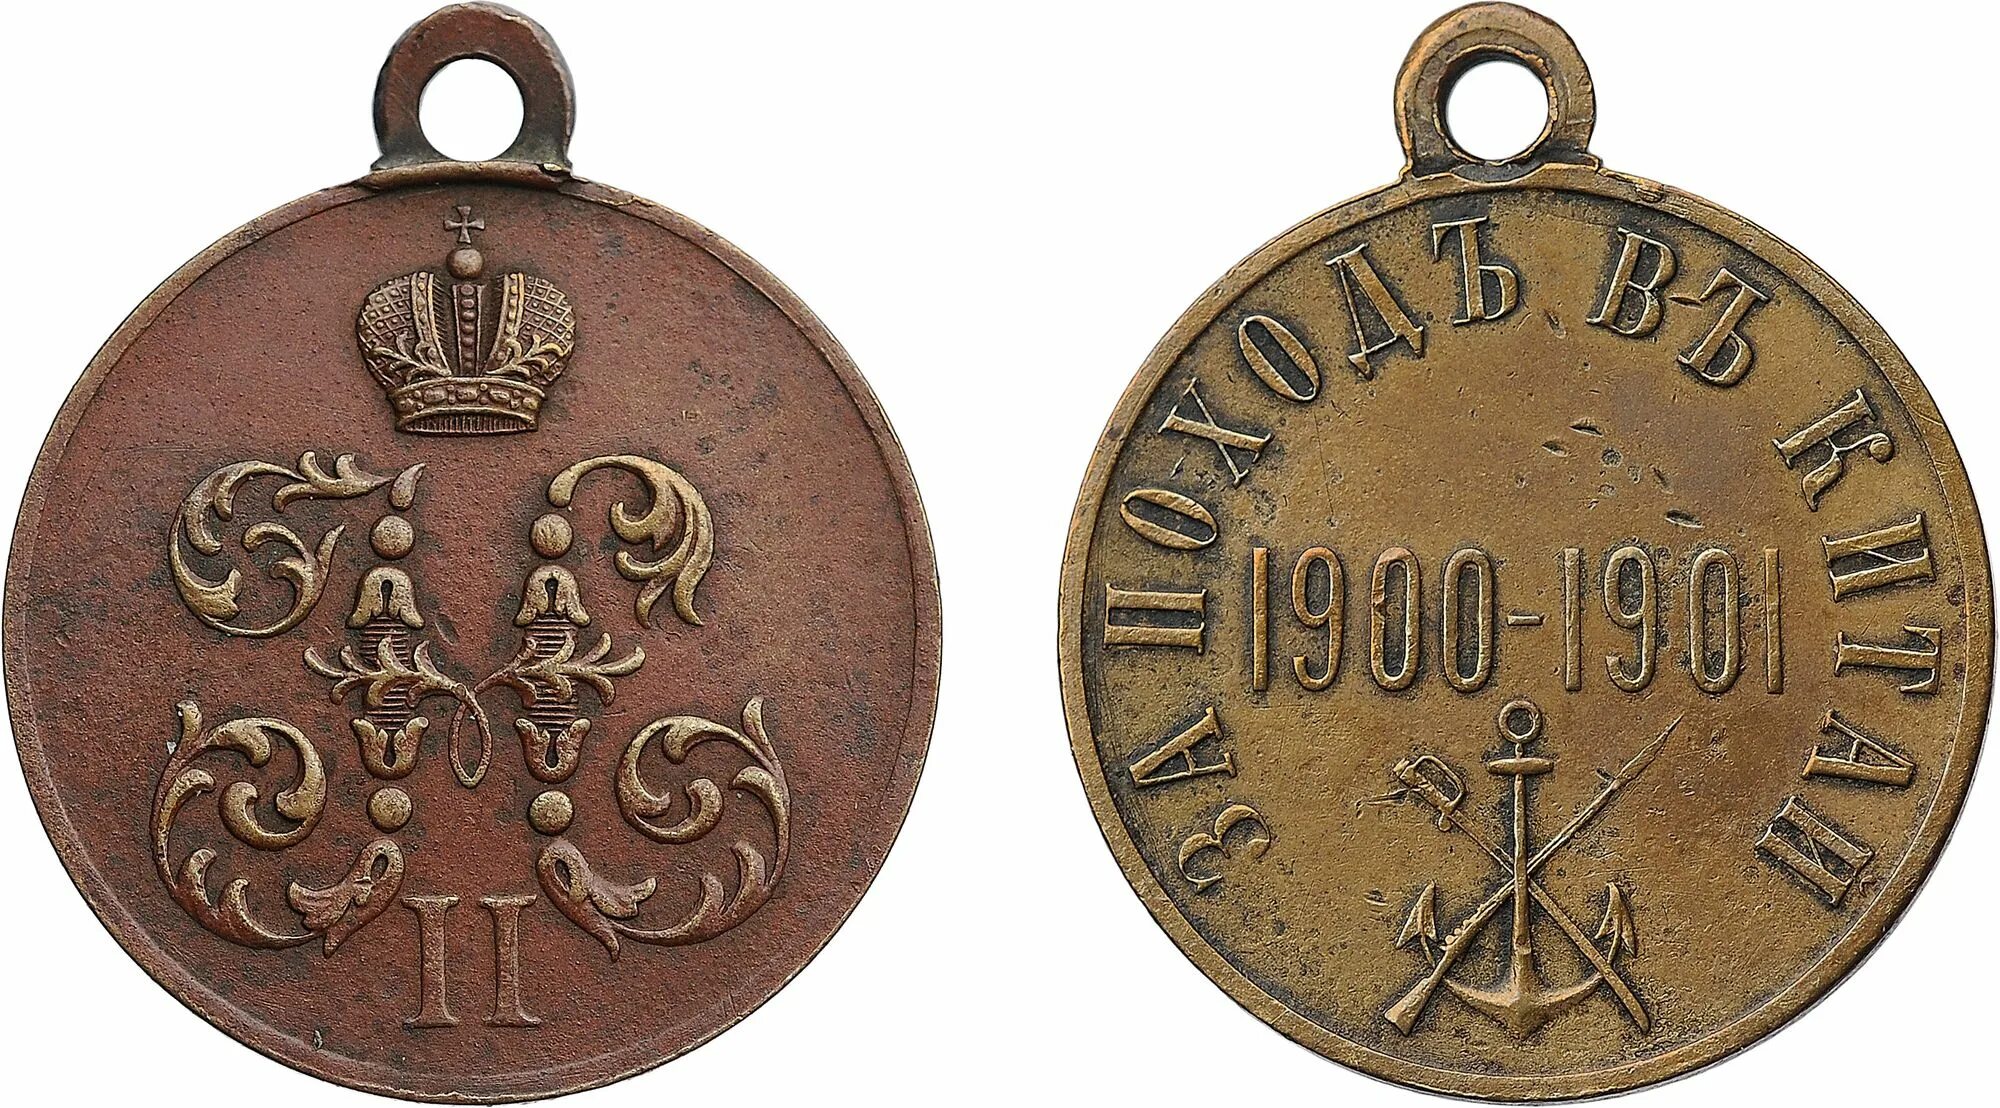 1900 0 1. За поход в Китай 1900-1901. Медаль за китайский поход 1900-1901. Медали Николая 2 1900-1901. Медаль за поход в Китай.